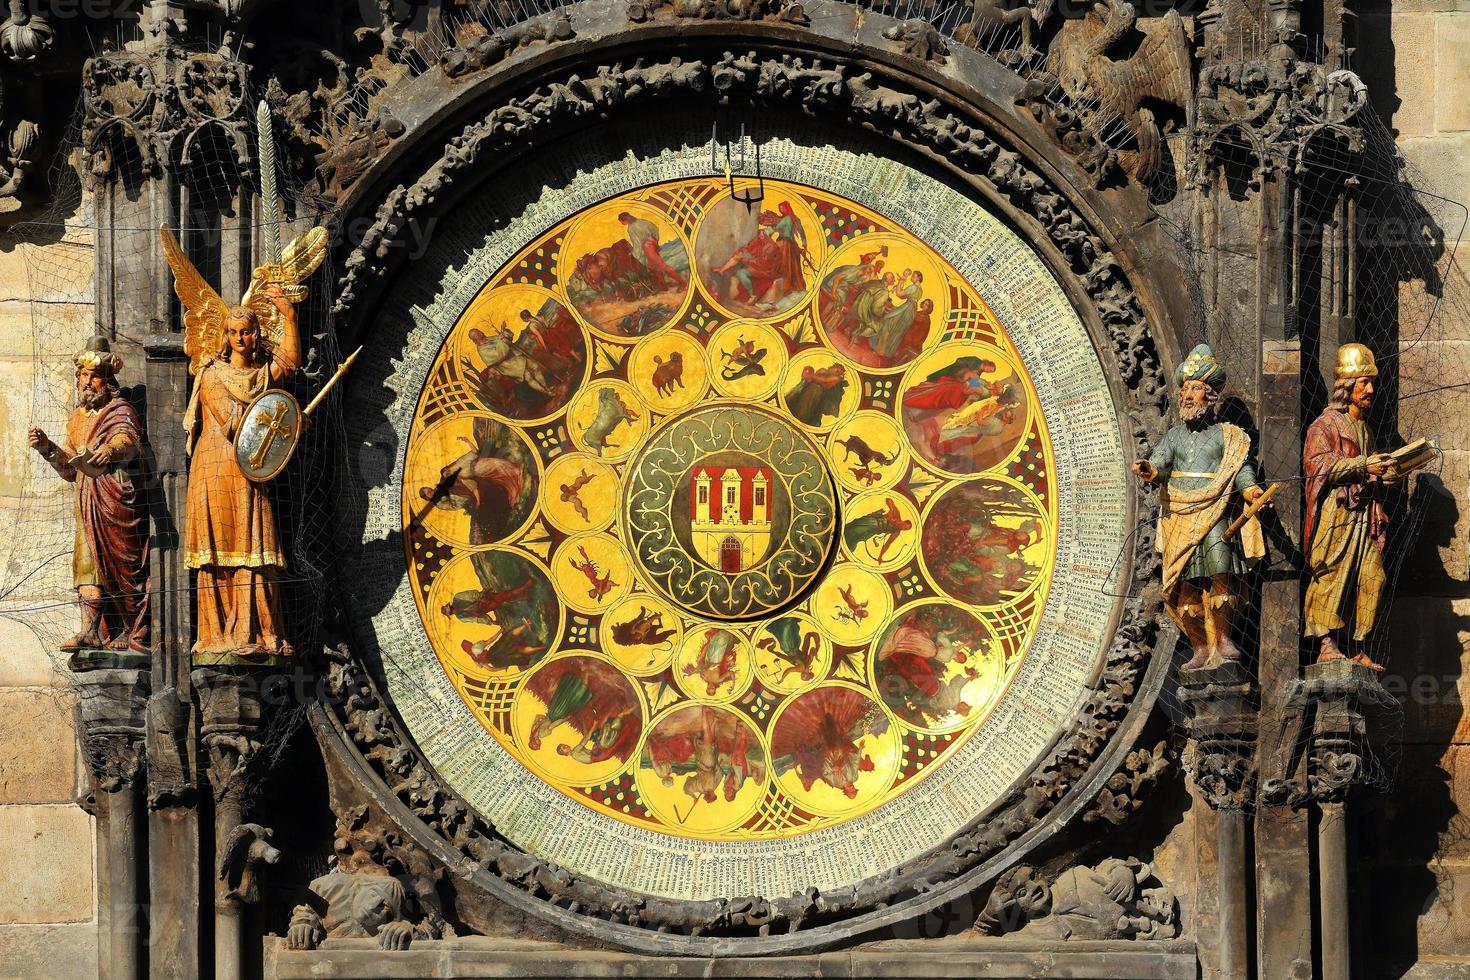 Détail de l'horloge astronomique médiévale historique de Prague sur l'ancien hôtel de ville, République tchèque photo